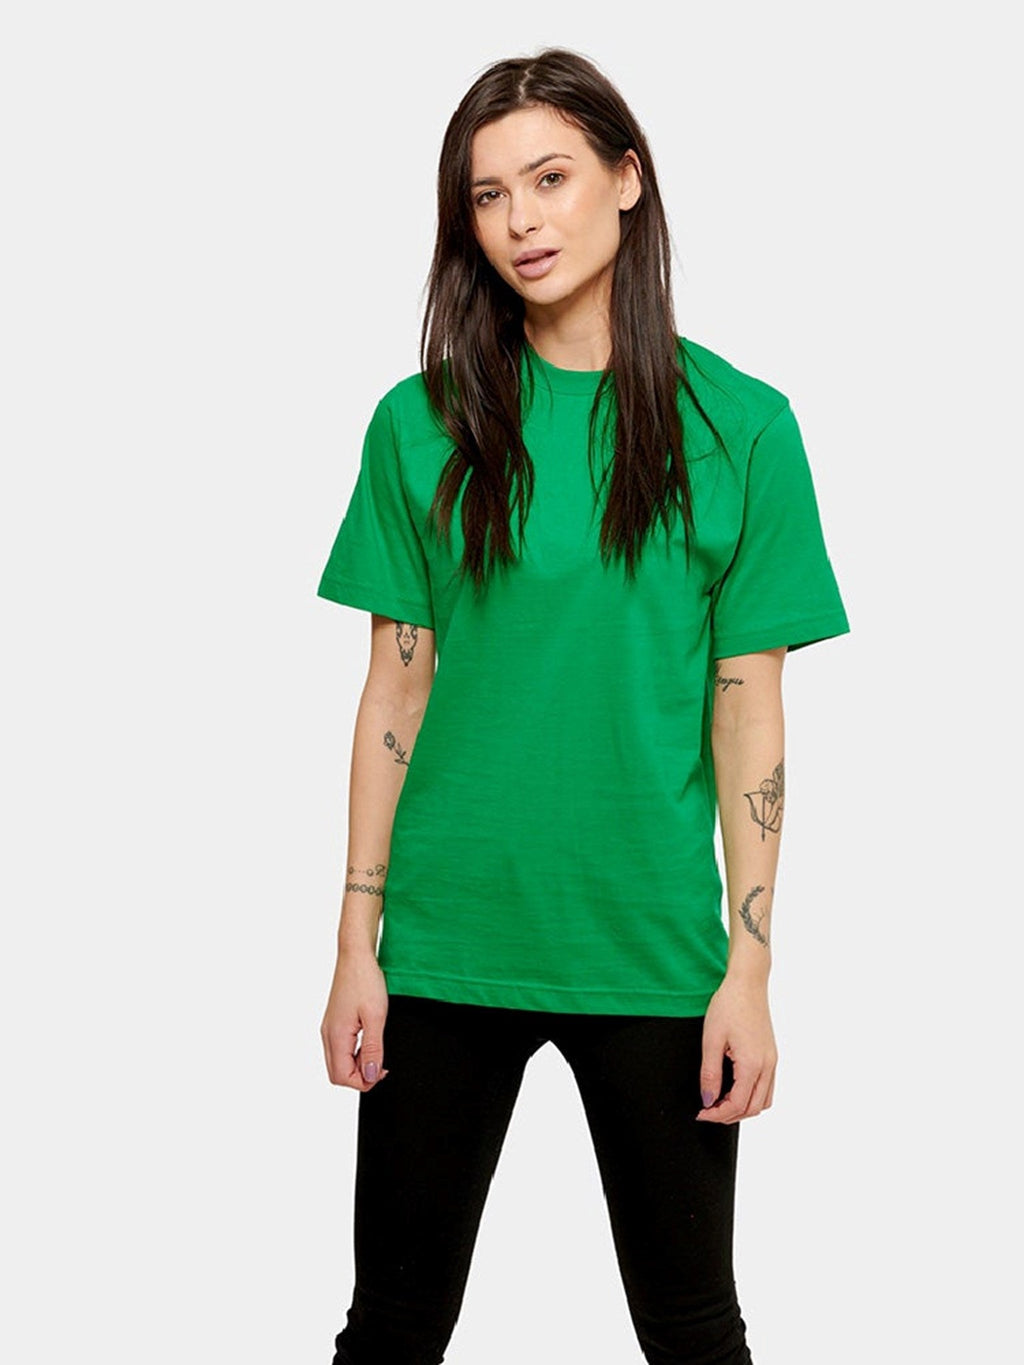 Ylisuuri T-paita-Naisten paketti (3 kpl.)